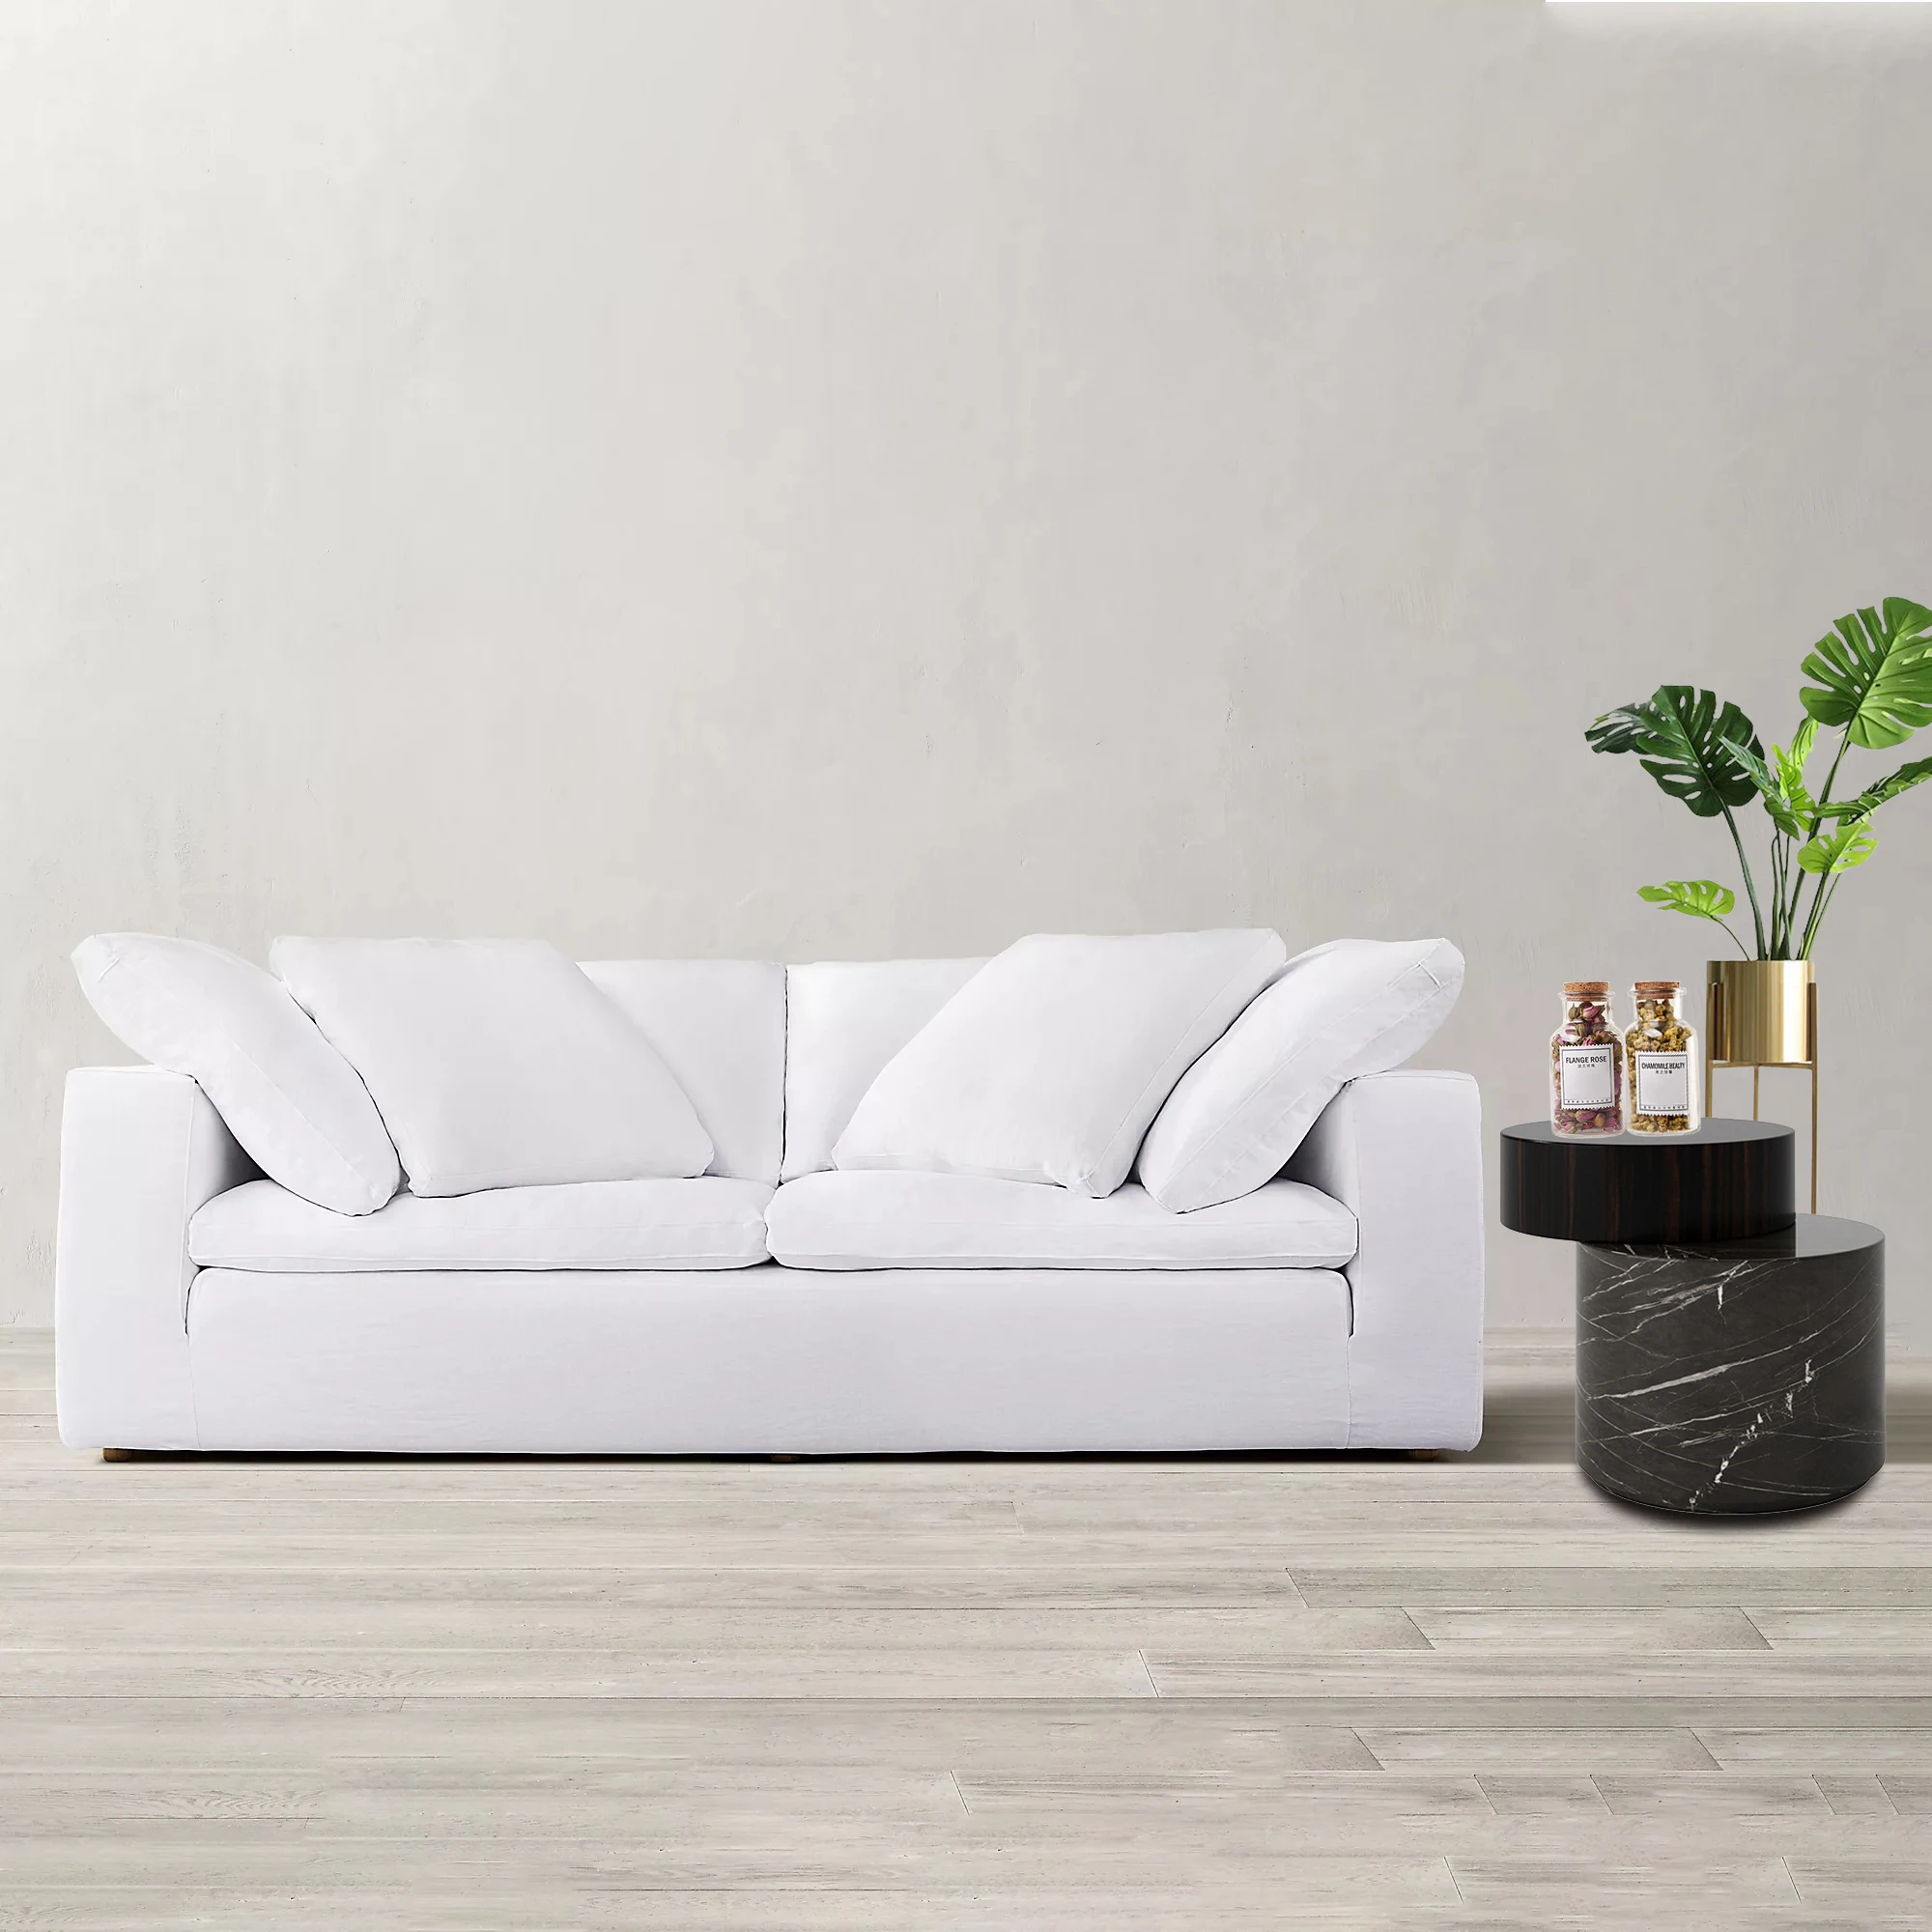 

Modern Velvet Upholstered Fabrics Sofa White and Cream Loveseat Couch with Armrest Living Room 2 Seater Sofas